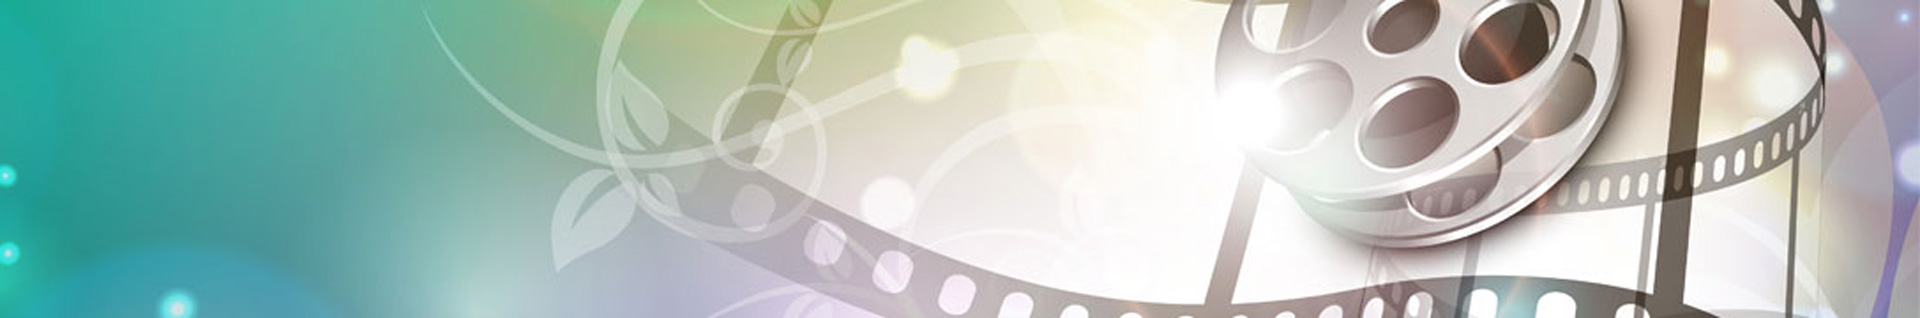 دانلود جدید ترین فیلم و سریال ها | DiGiFiLiMo.CoM